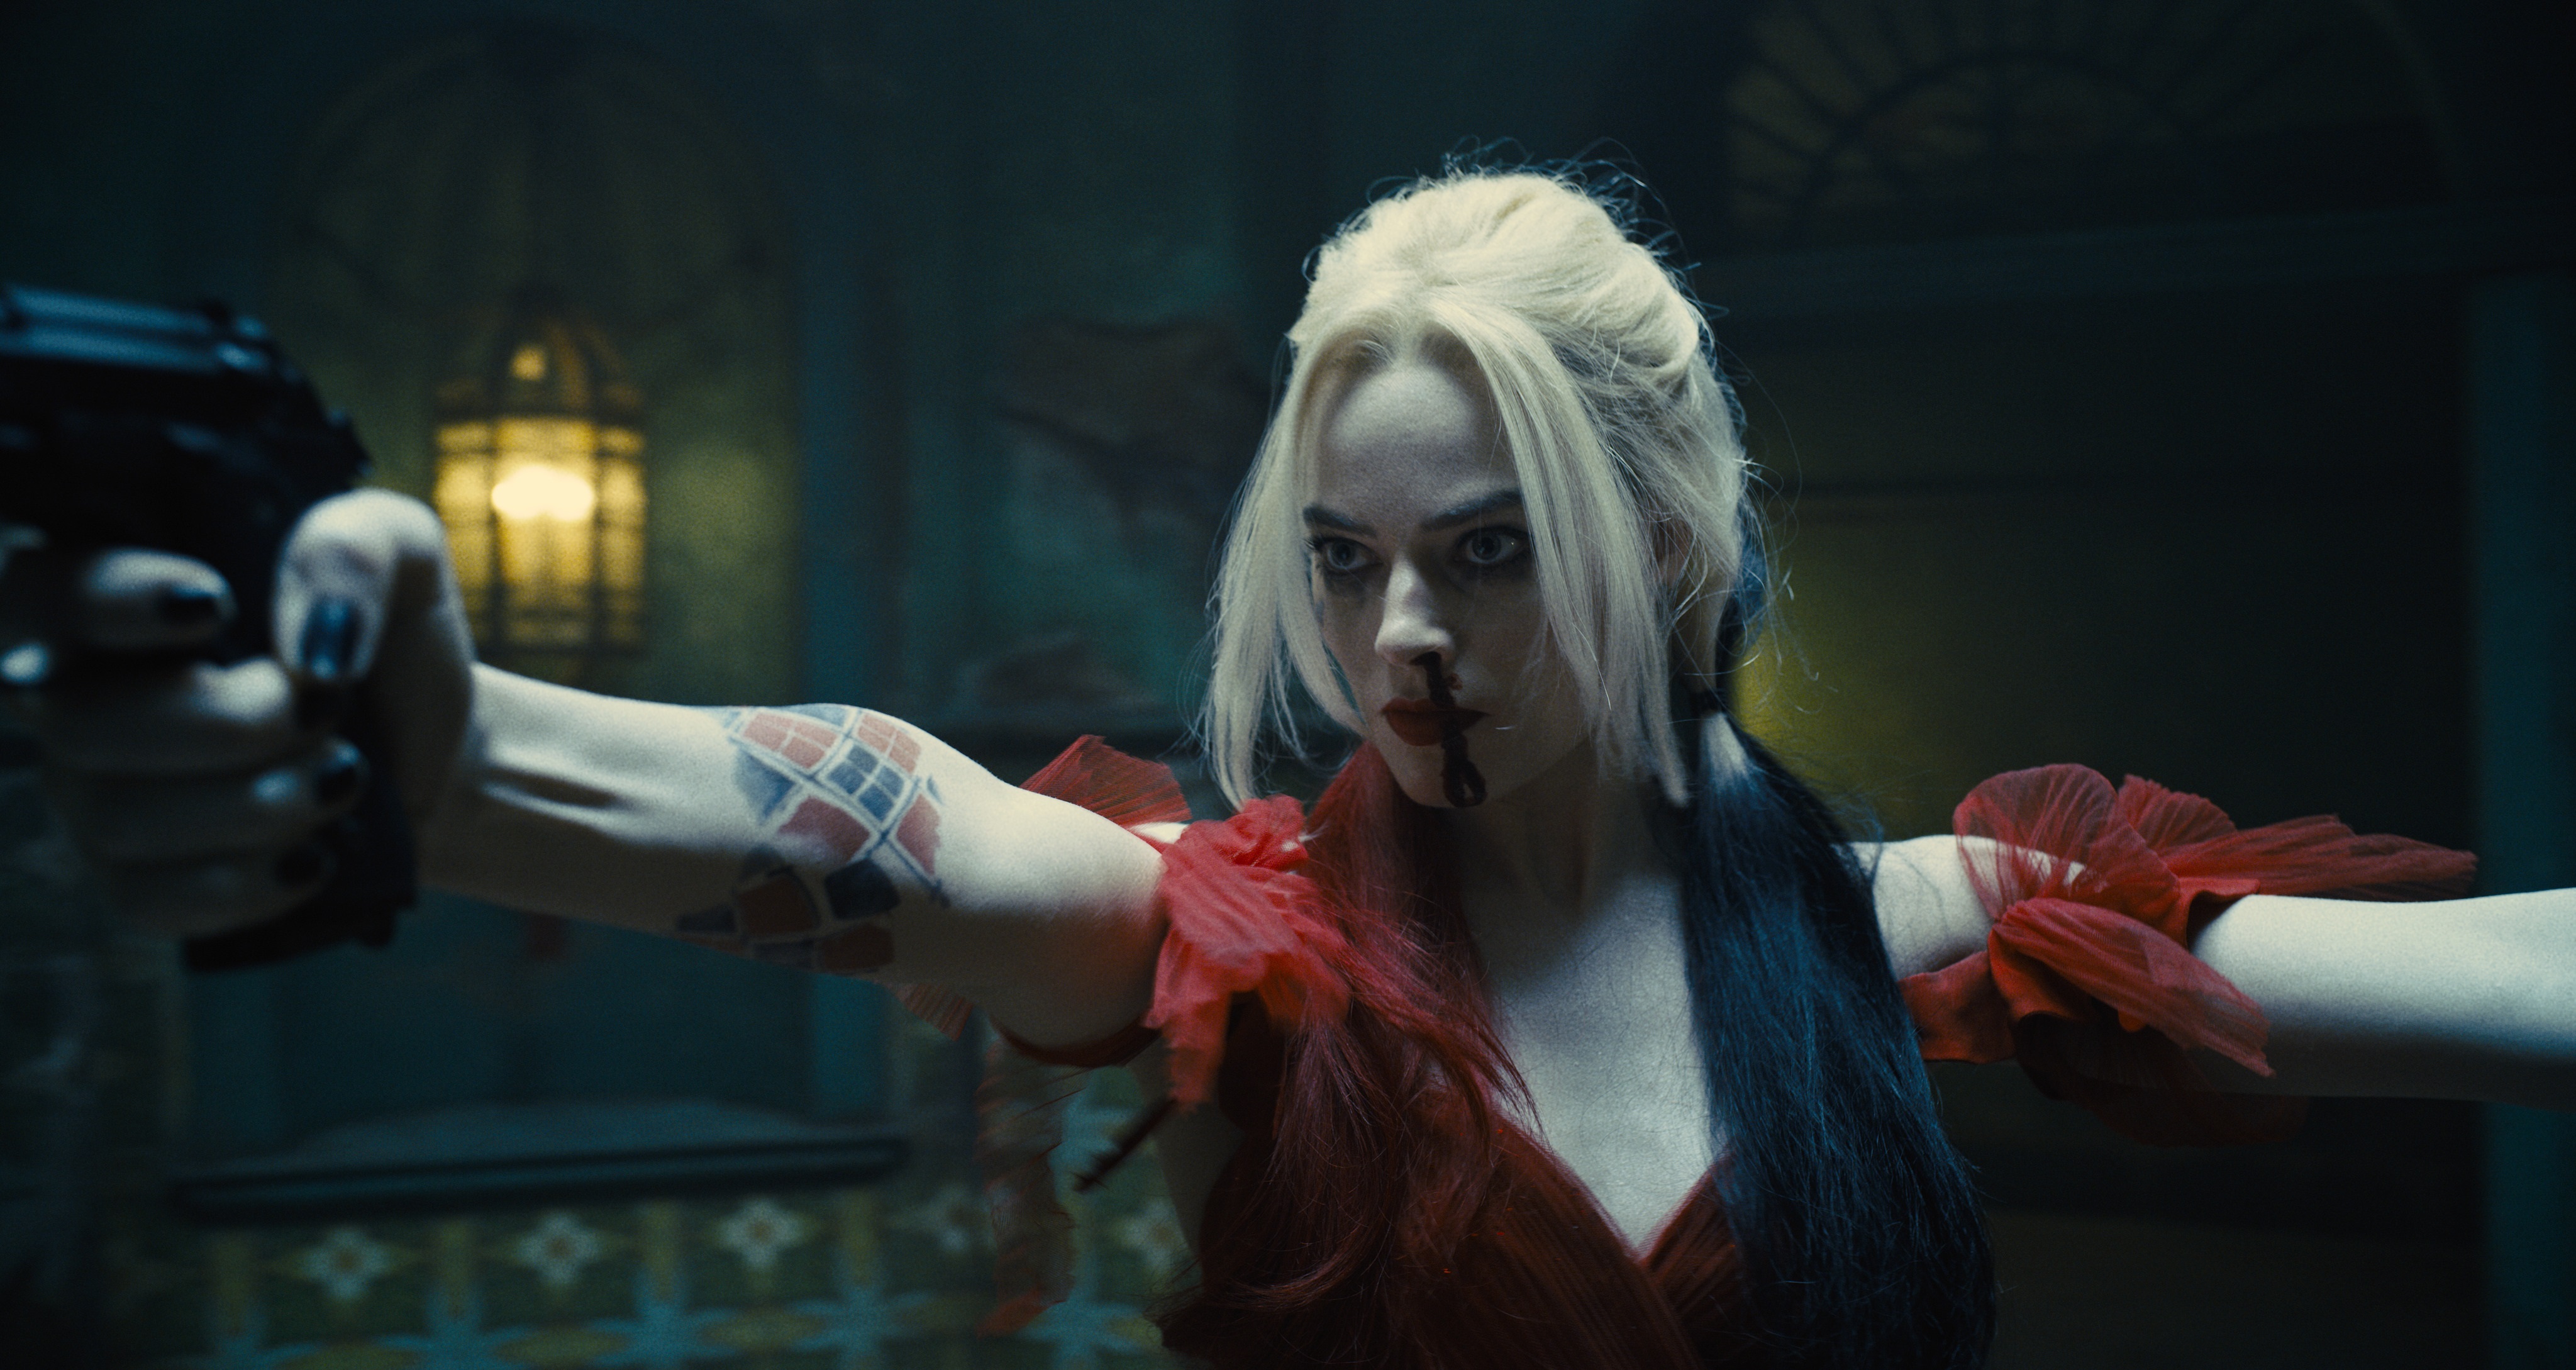 Fotografía cedida por Warner Bros./DC Comics que muestra a la actriz Margot Robbie durante una escena de la película "The Suicide Squad"./DC Comics

